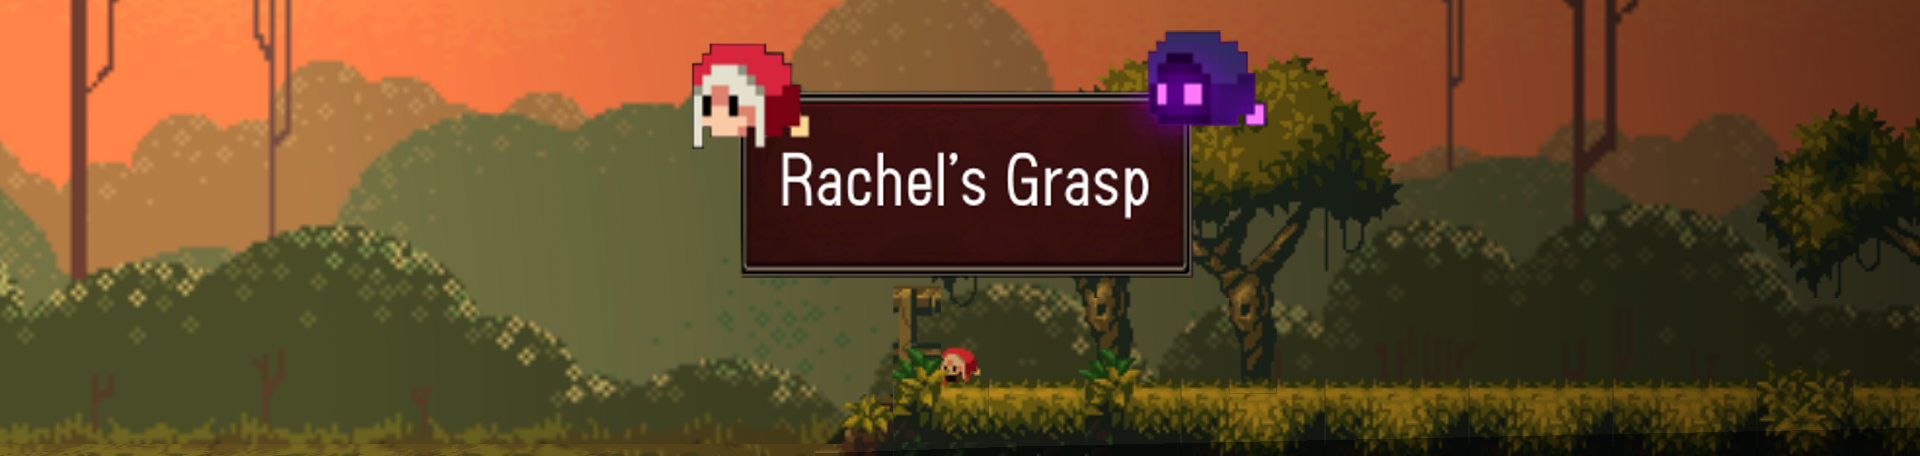 Rachel's Grasp